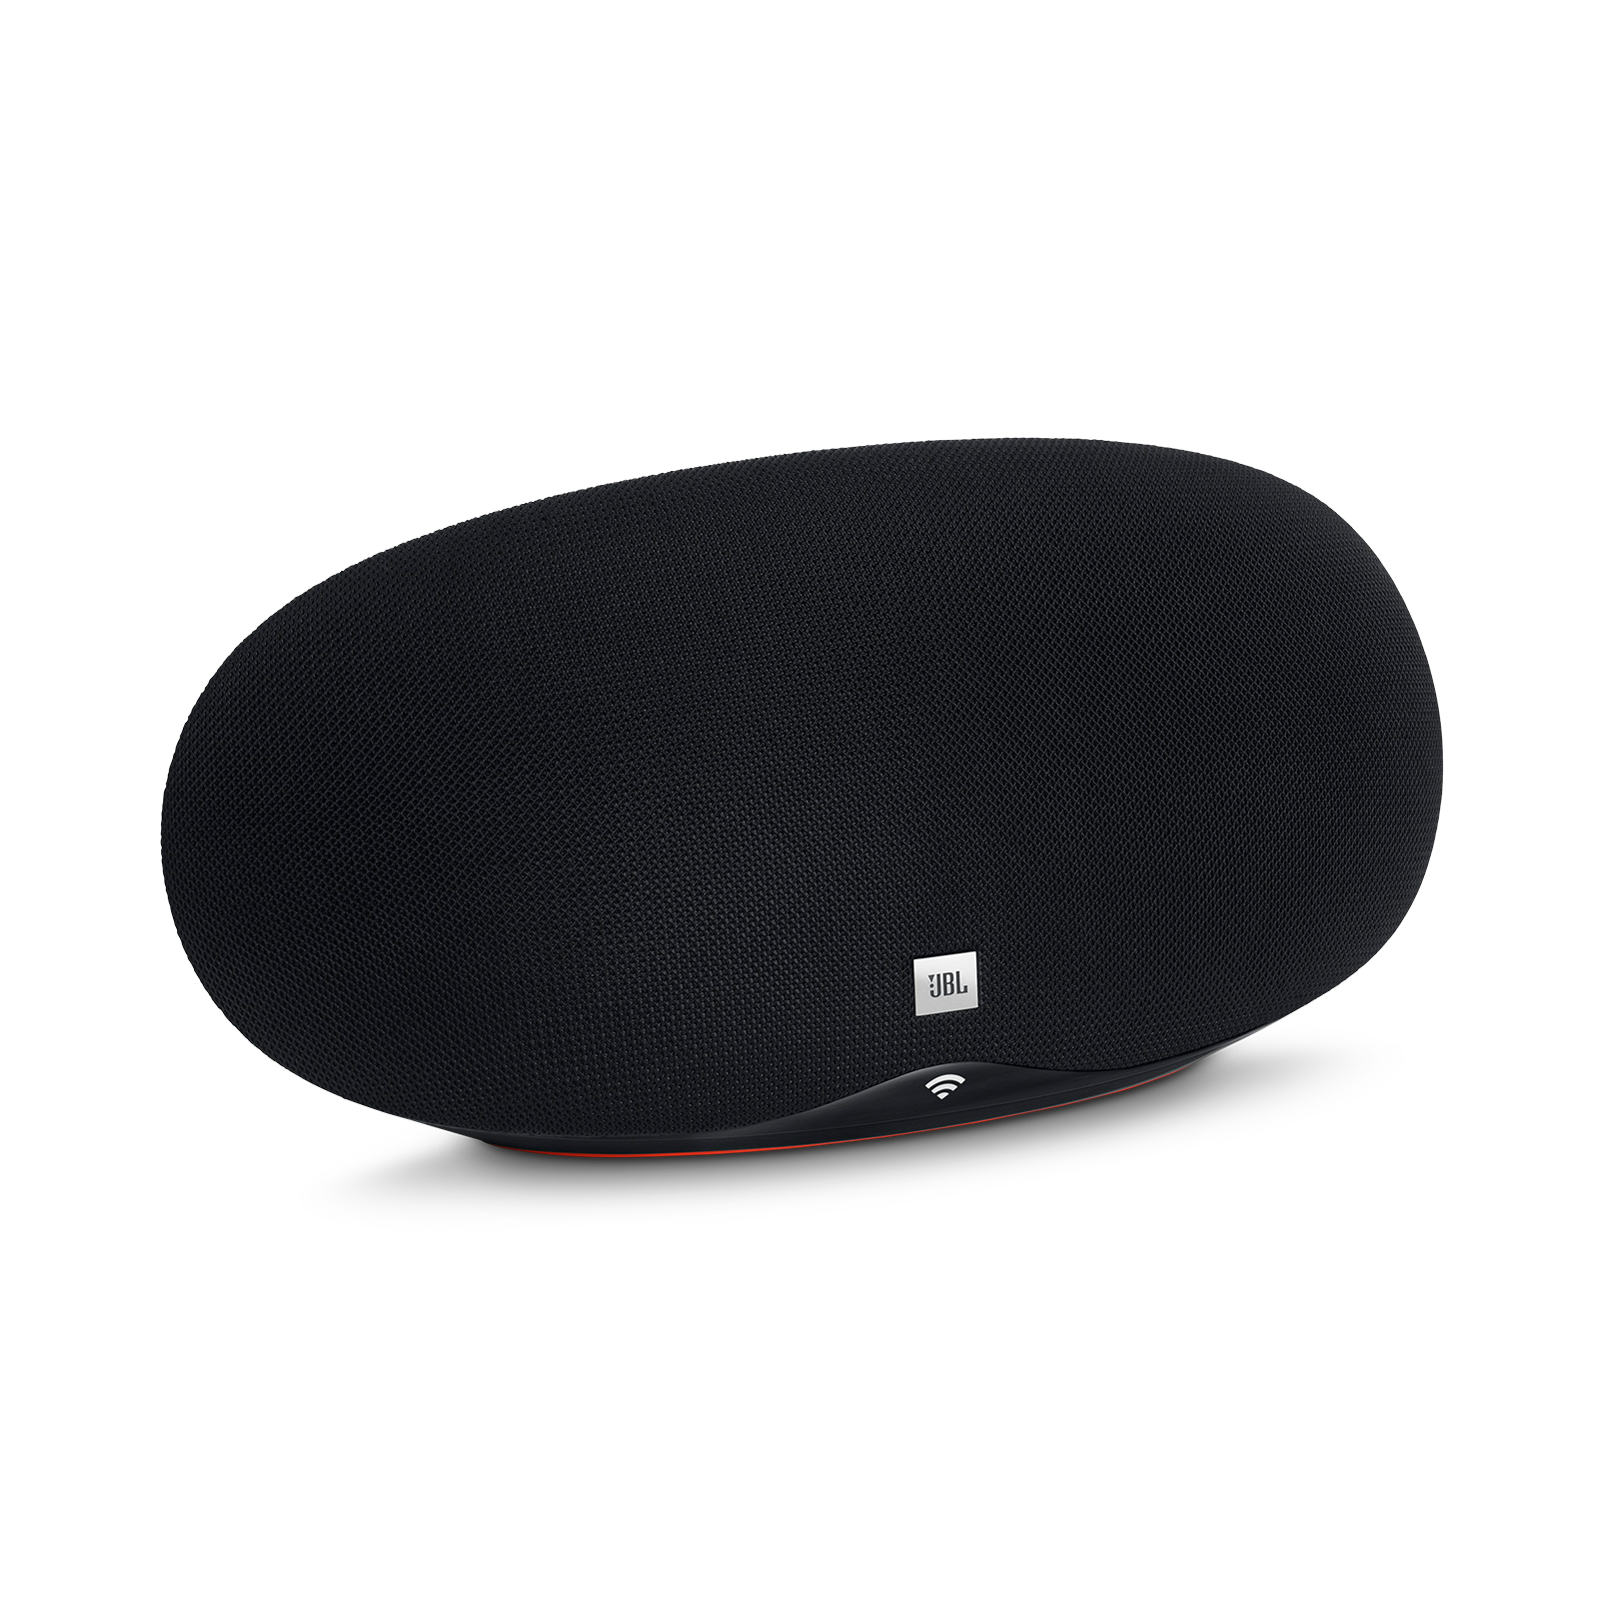 JBL Playlist | Wireless speaker with Chromecast built-in